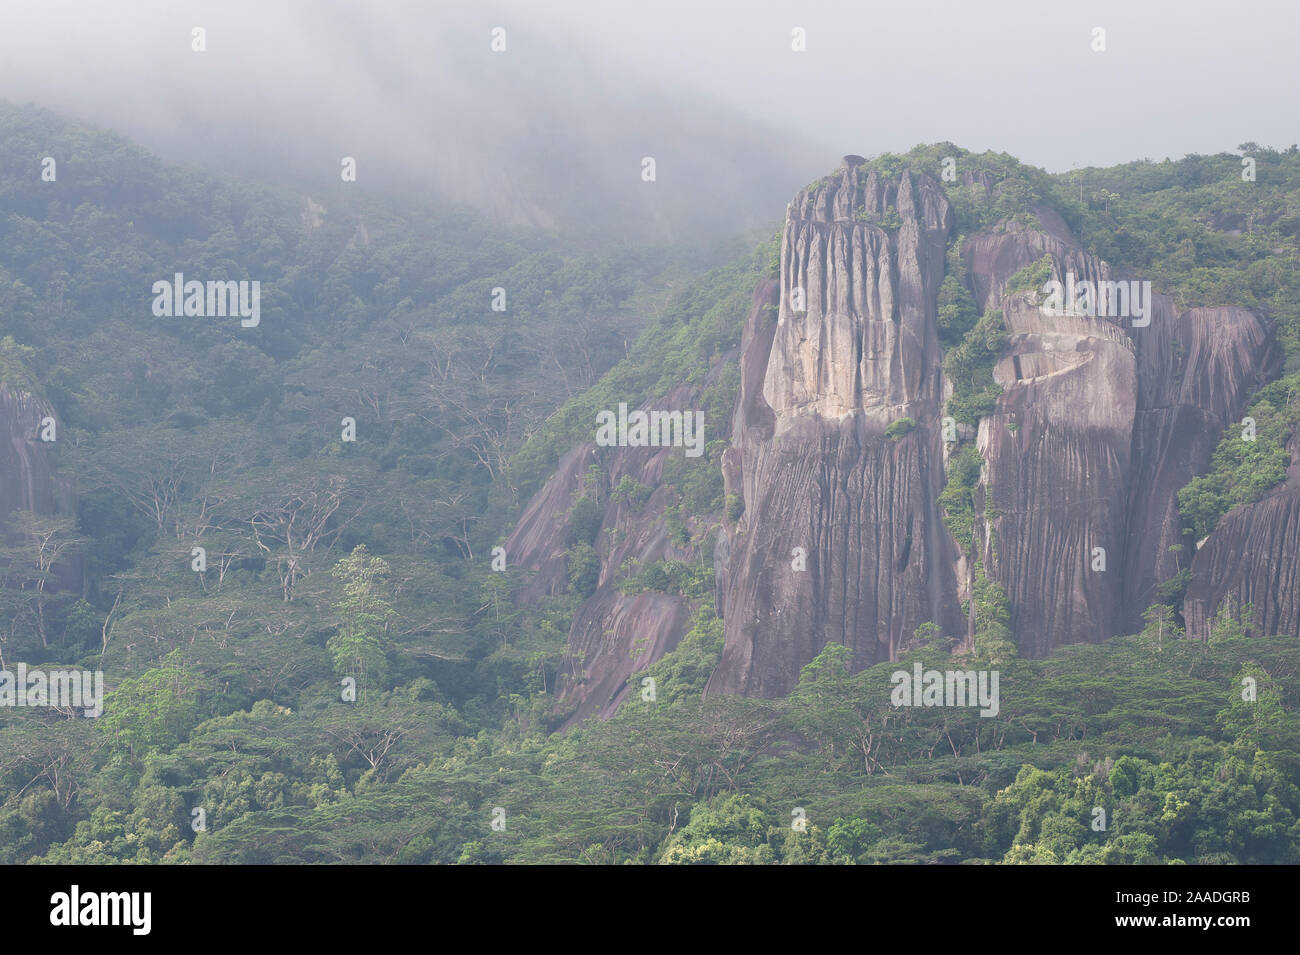 Les forêts tropicales vierges et granite abruptes dans la brume, parc national de Morne Seychelles, l'île de Mahé, République des Seychelles Banque D'Images